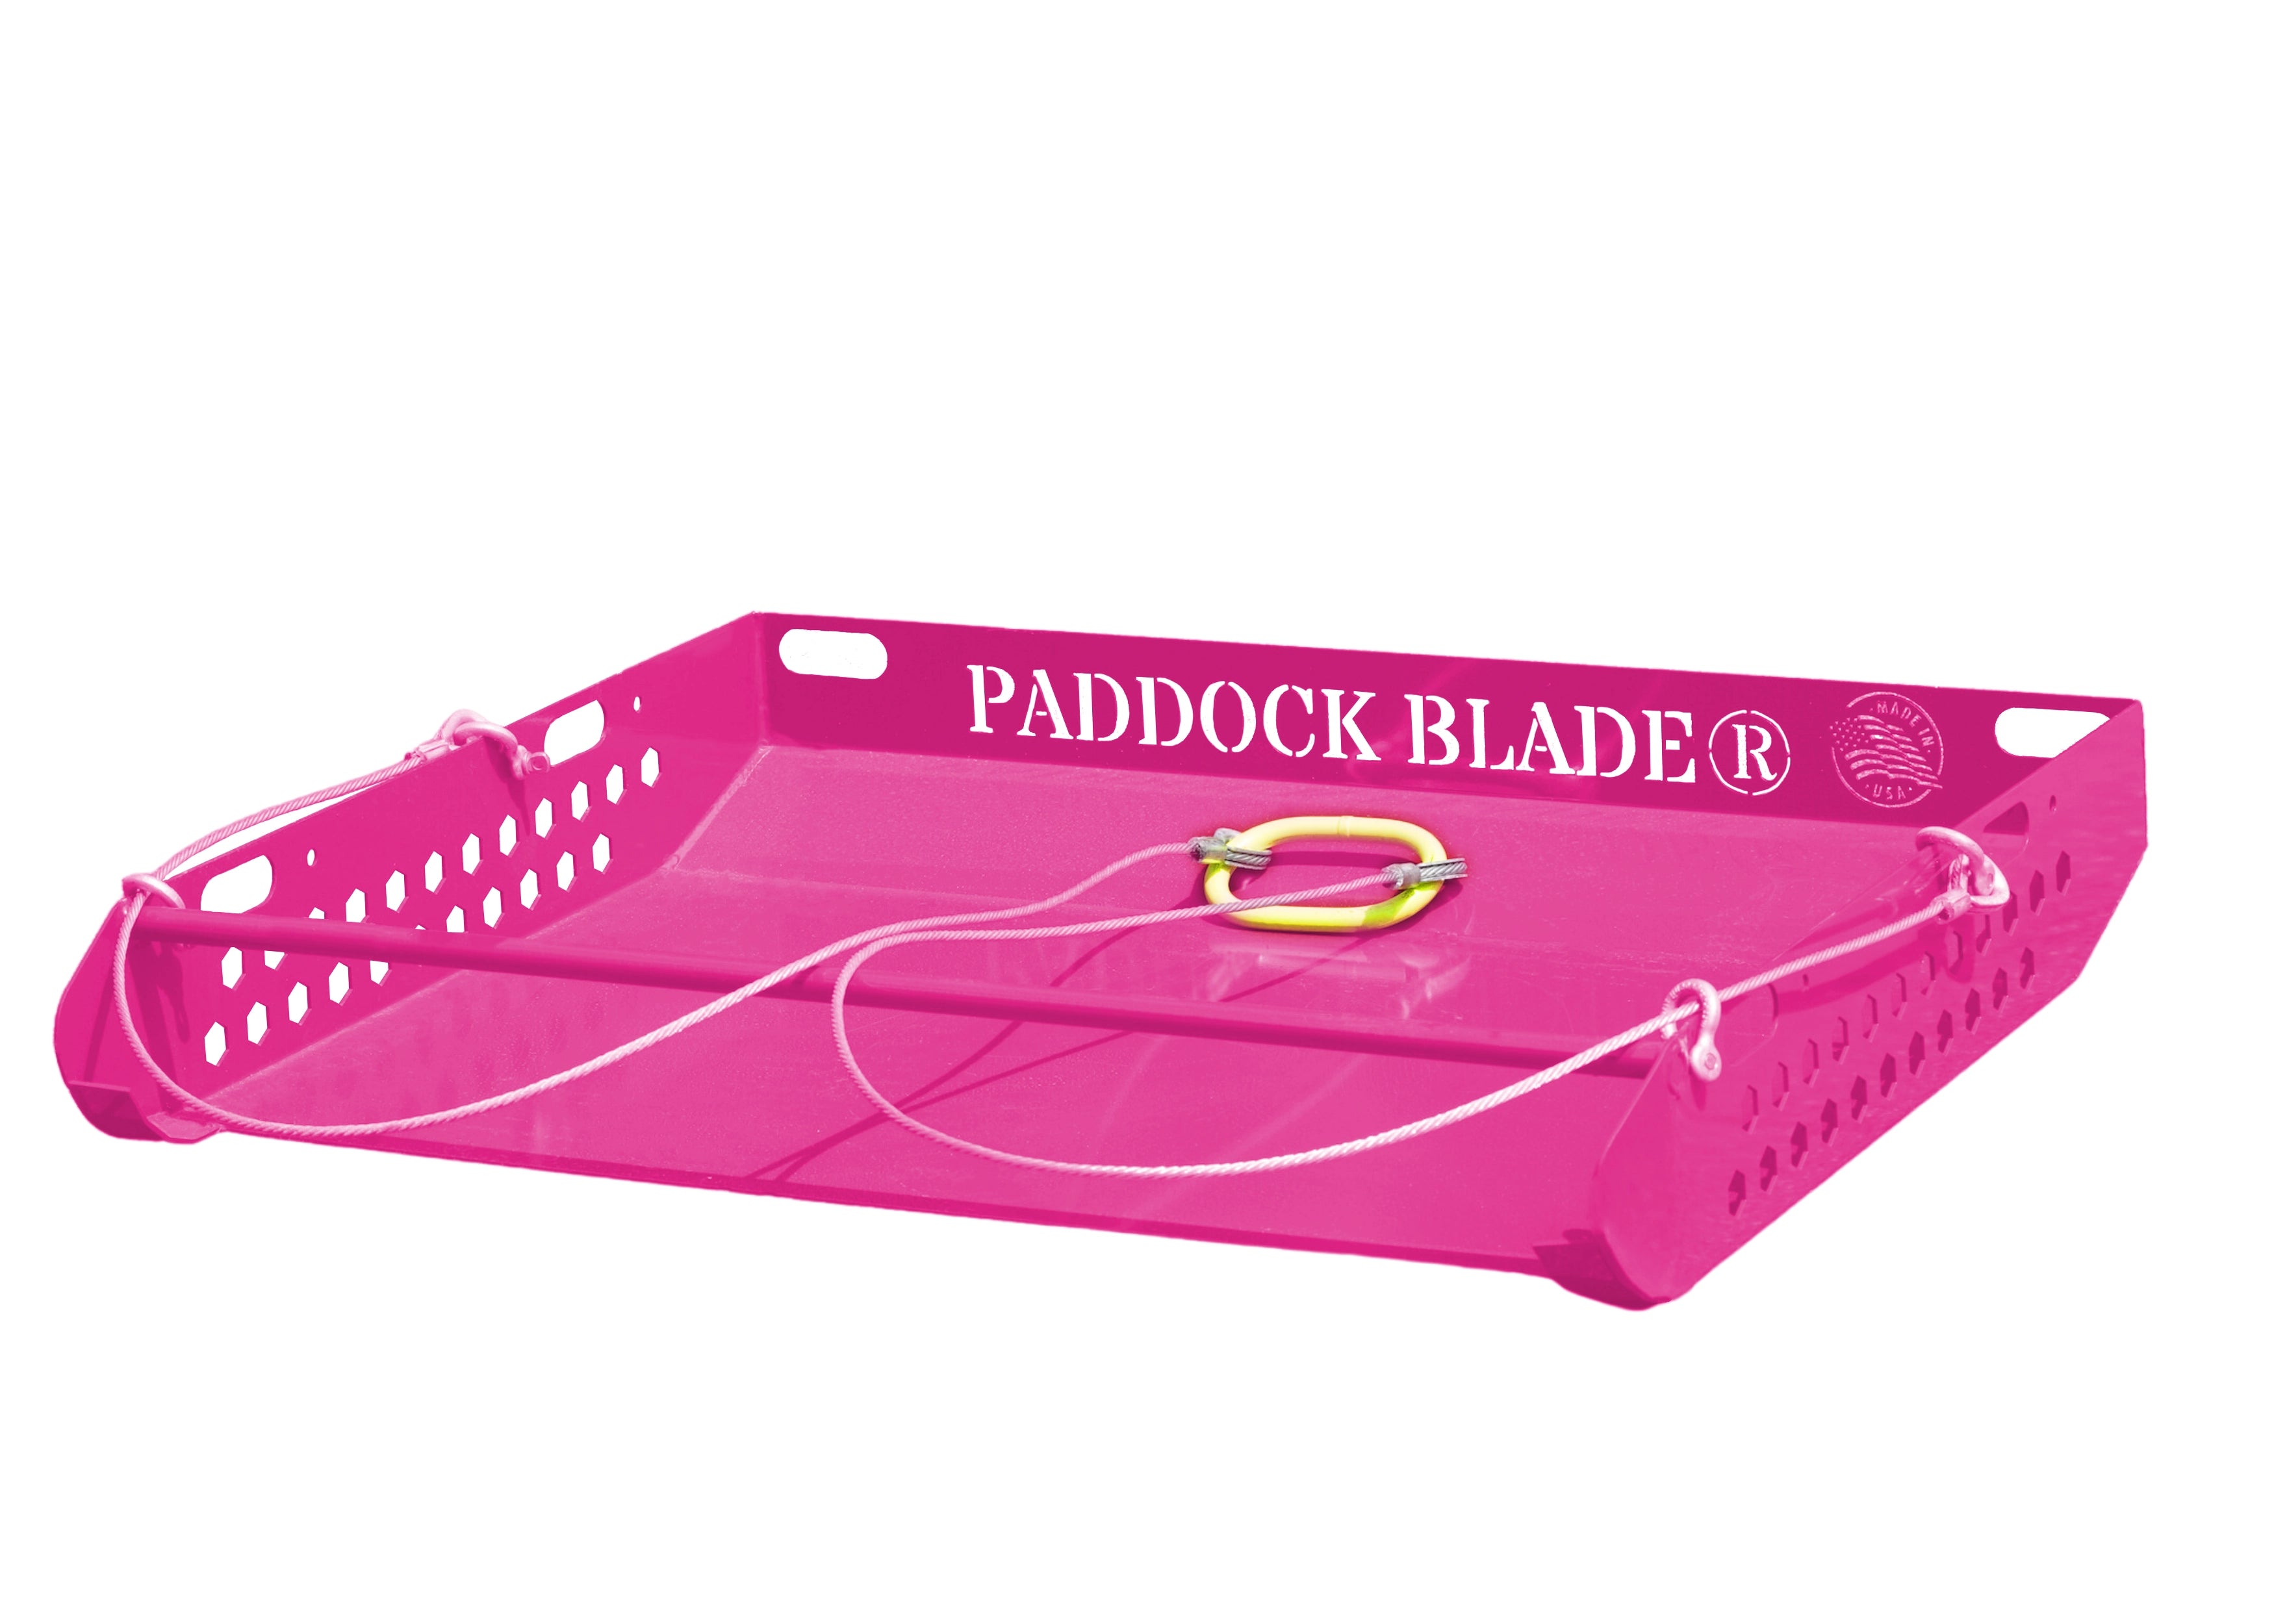 Pink Paddock blade USA